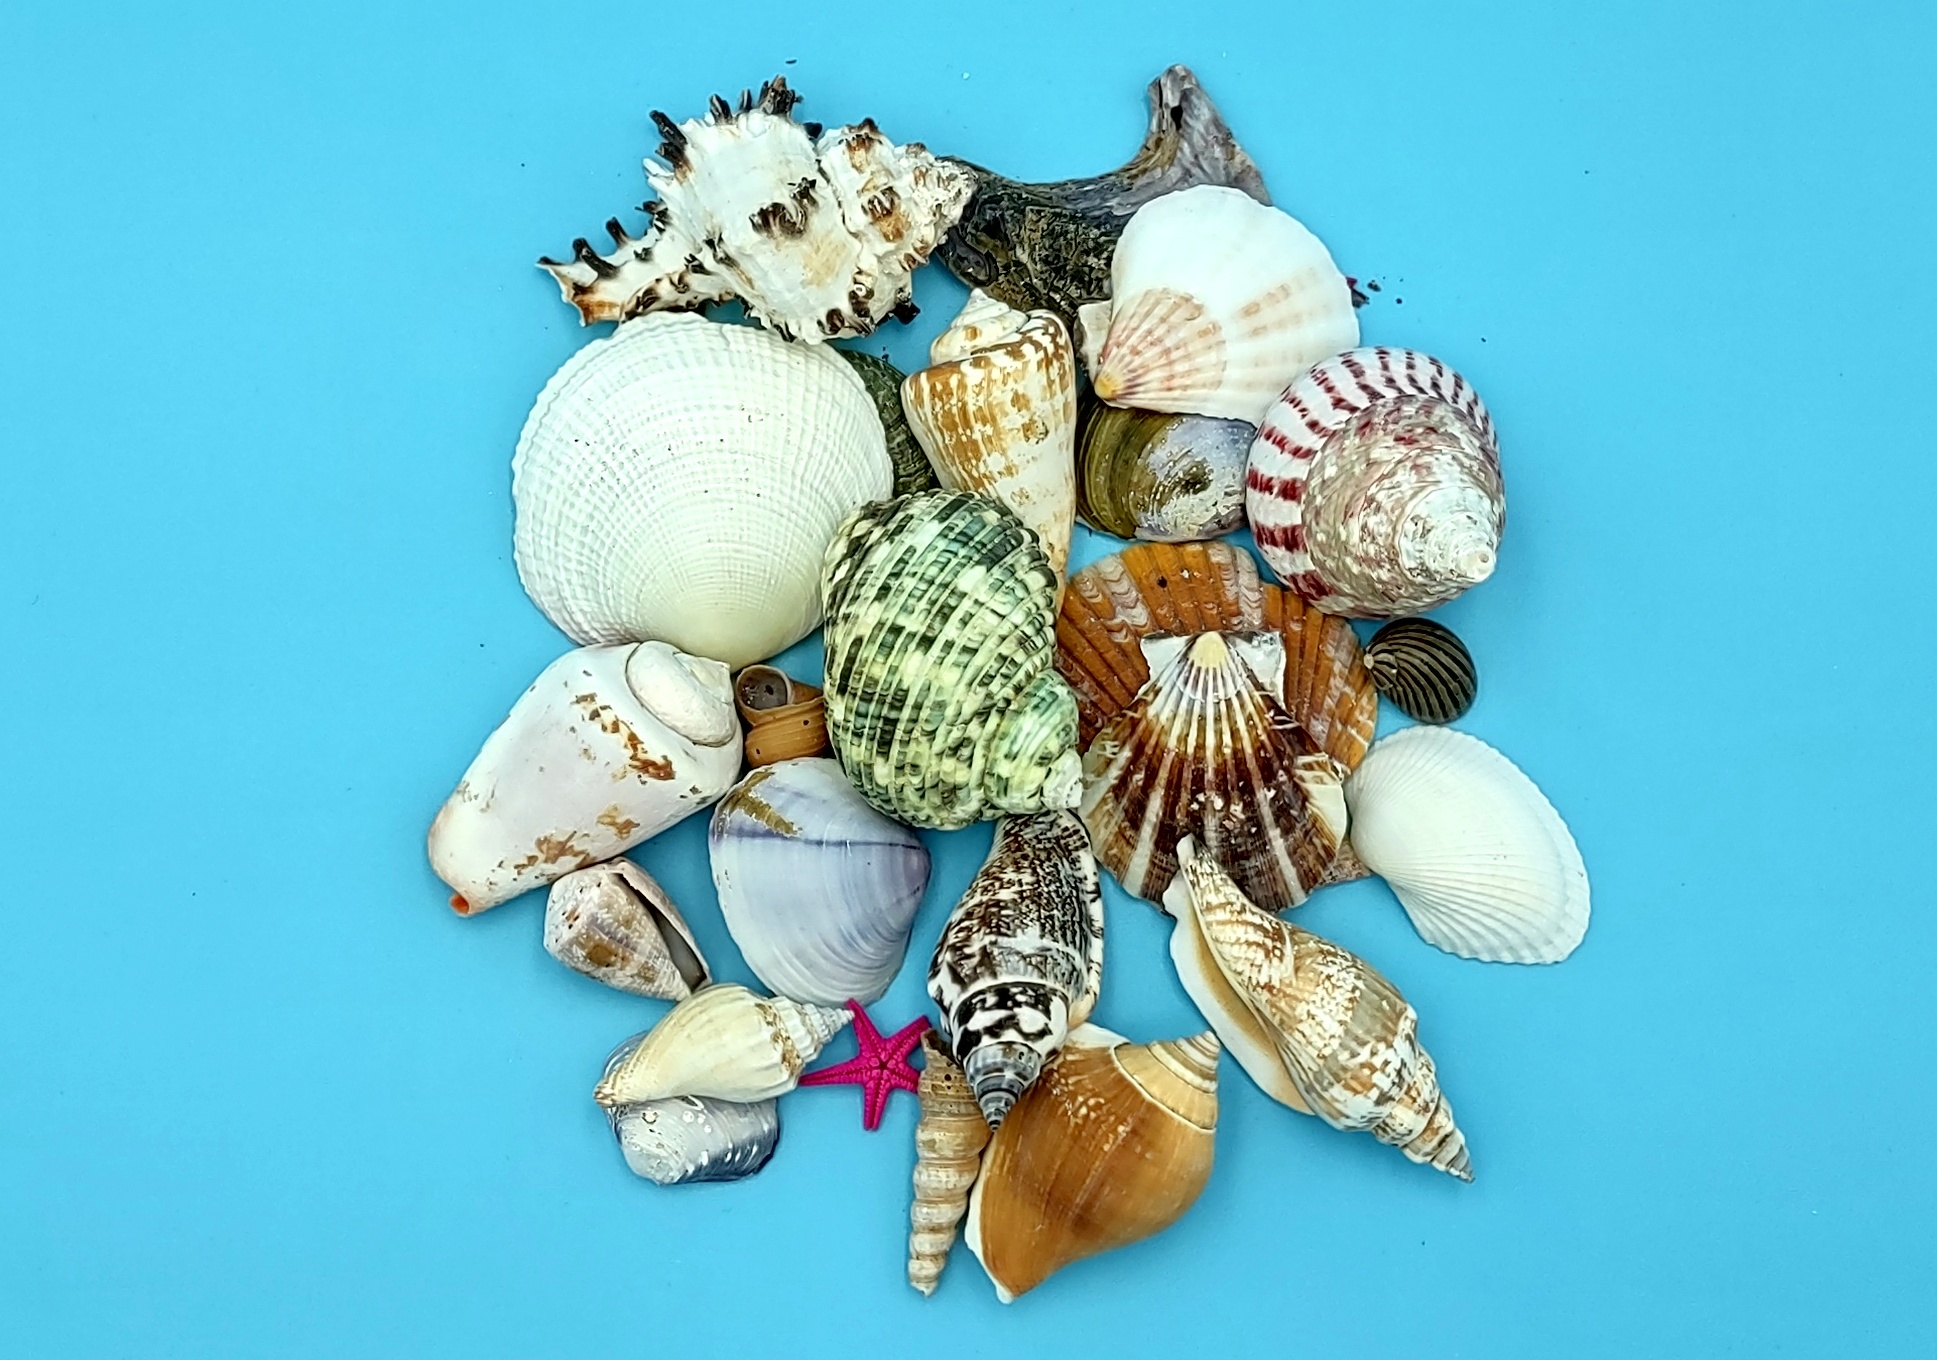 Small Seashell Mix-0.251.5assorted Seashells-sea Shells Bulk-sea